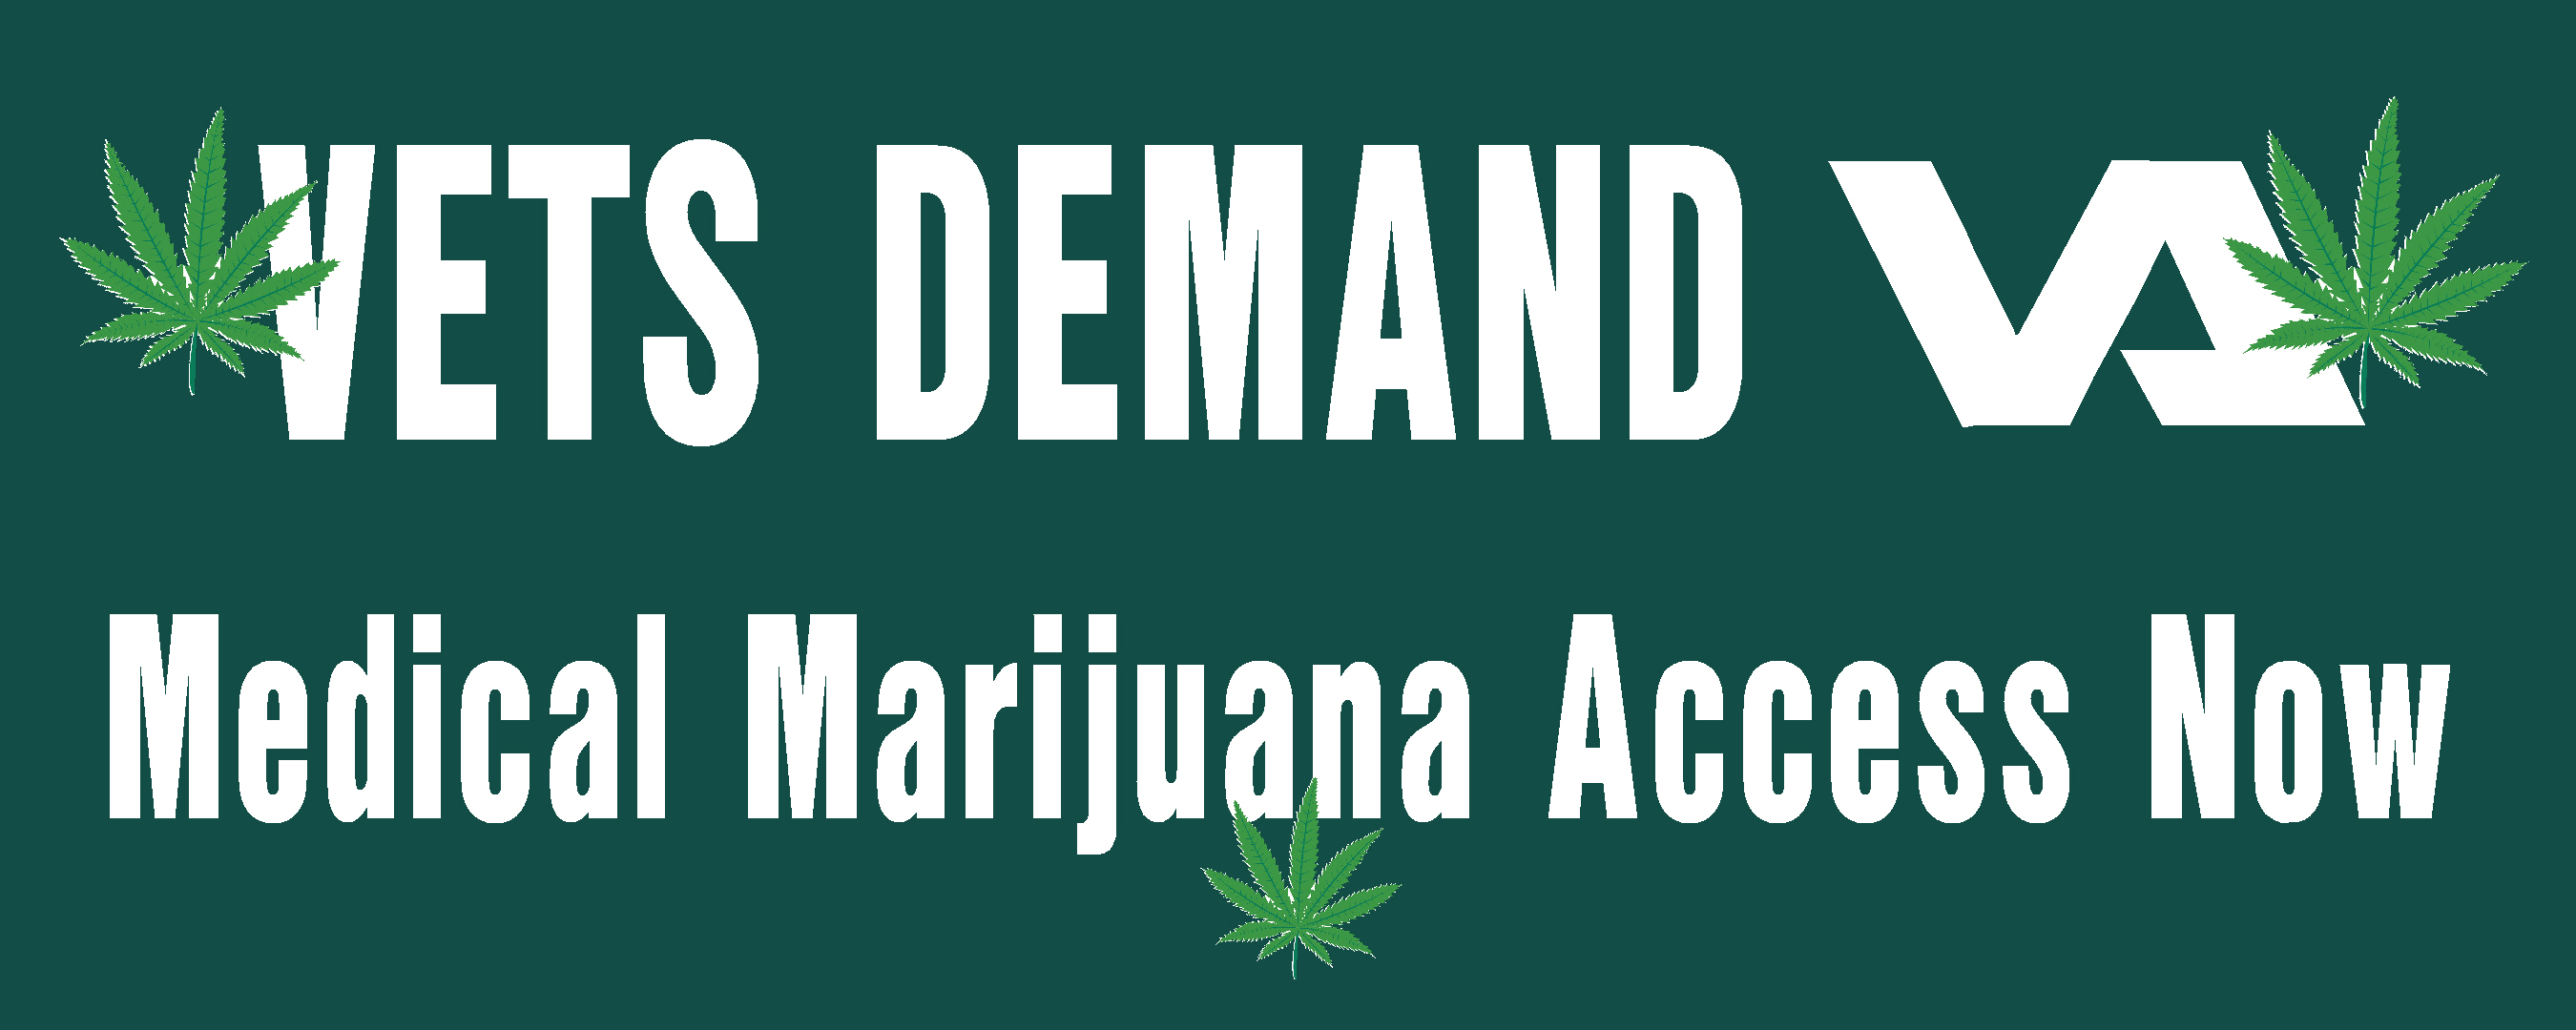 VA medical marijuana access